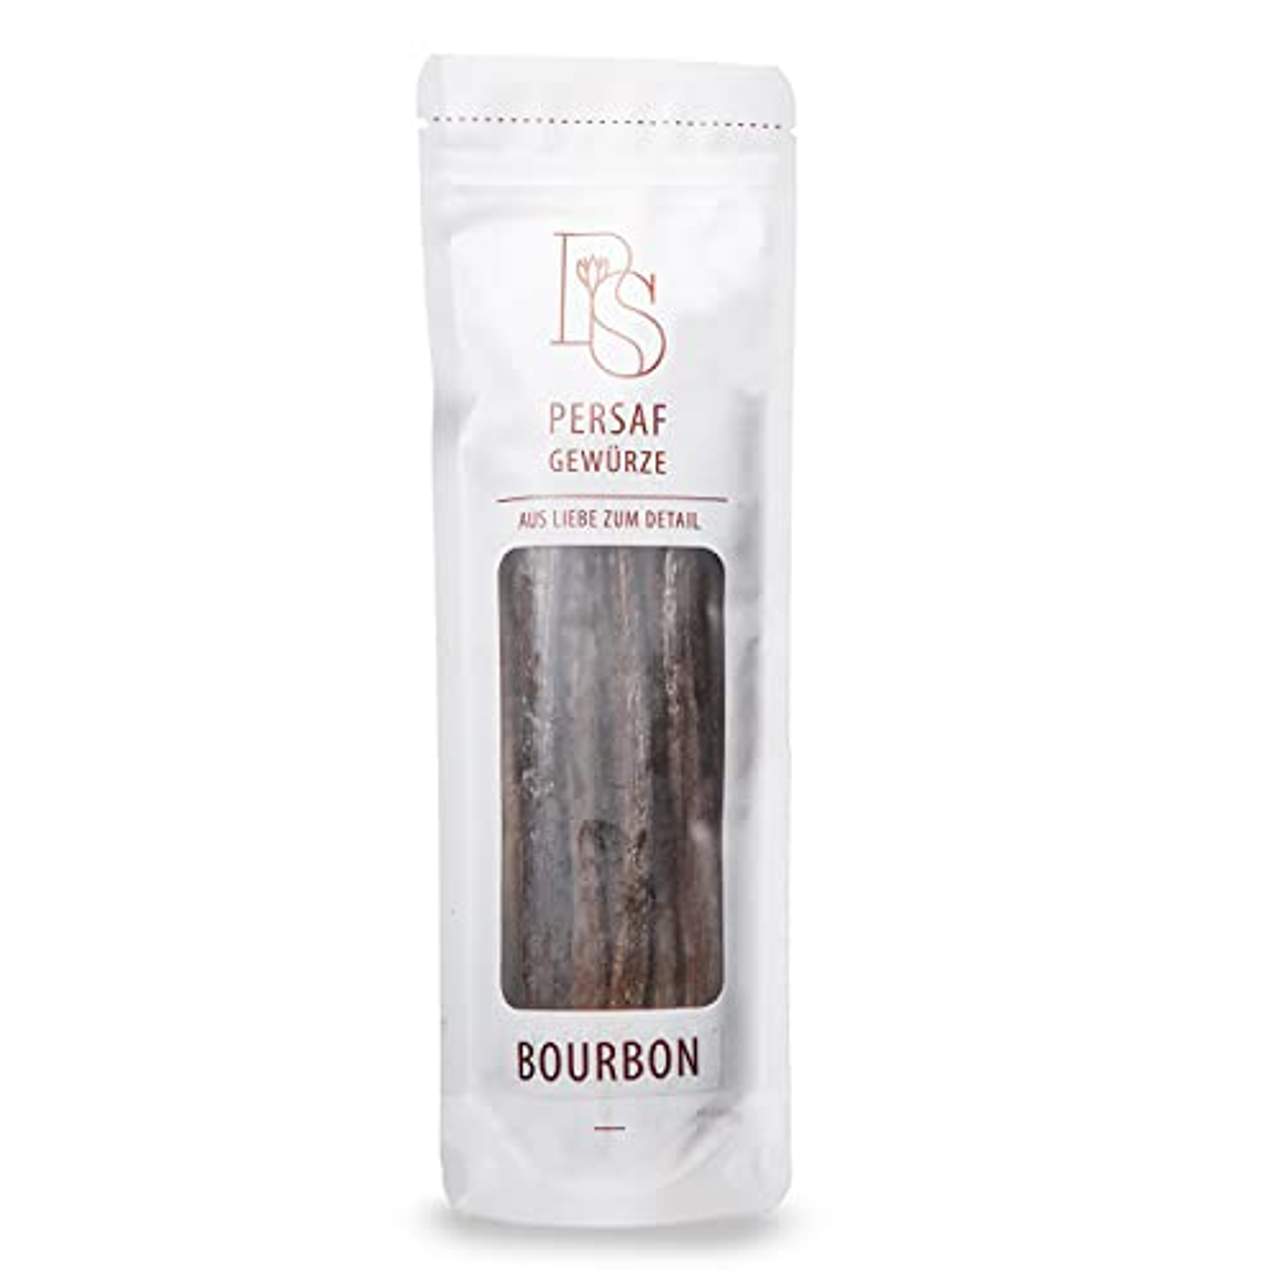 PerSaf Bourbon Vanilleschoten 15 bis 18 cm in Premium-Qualität 10 Stück